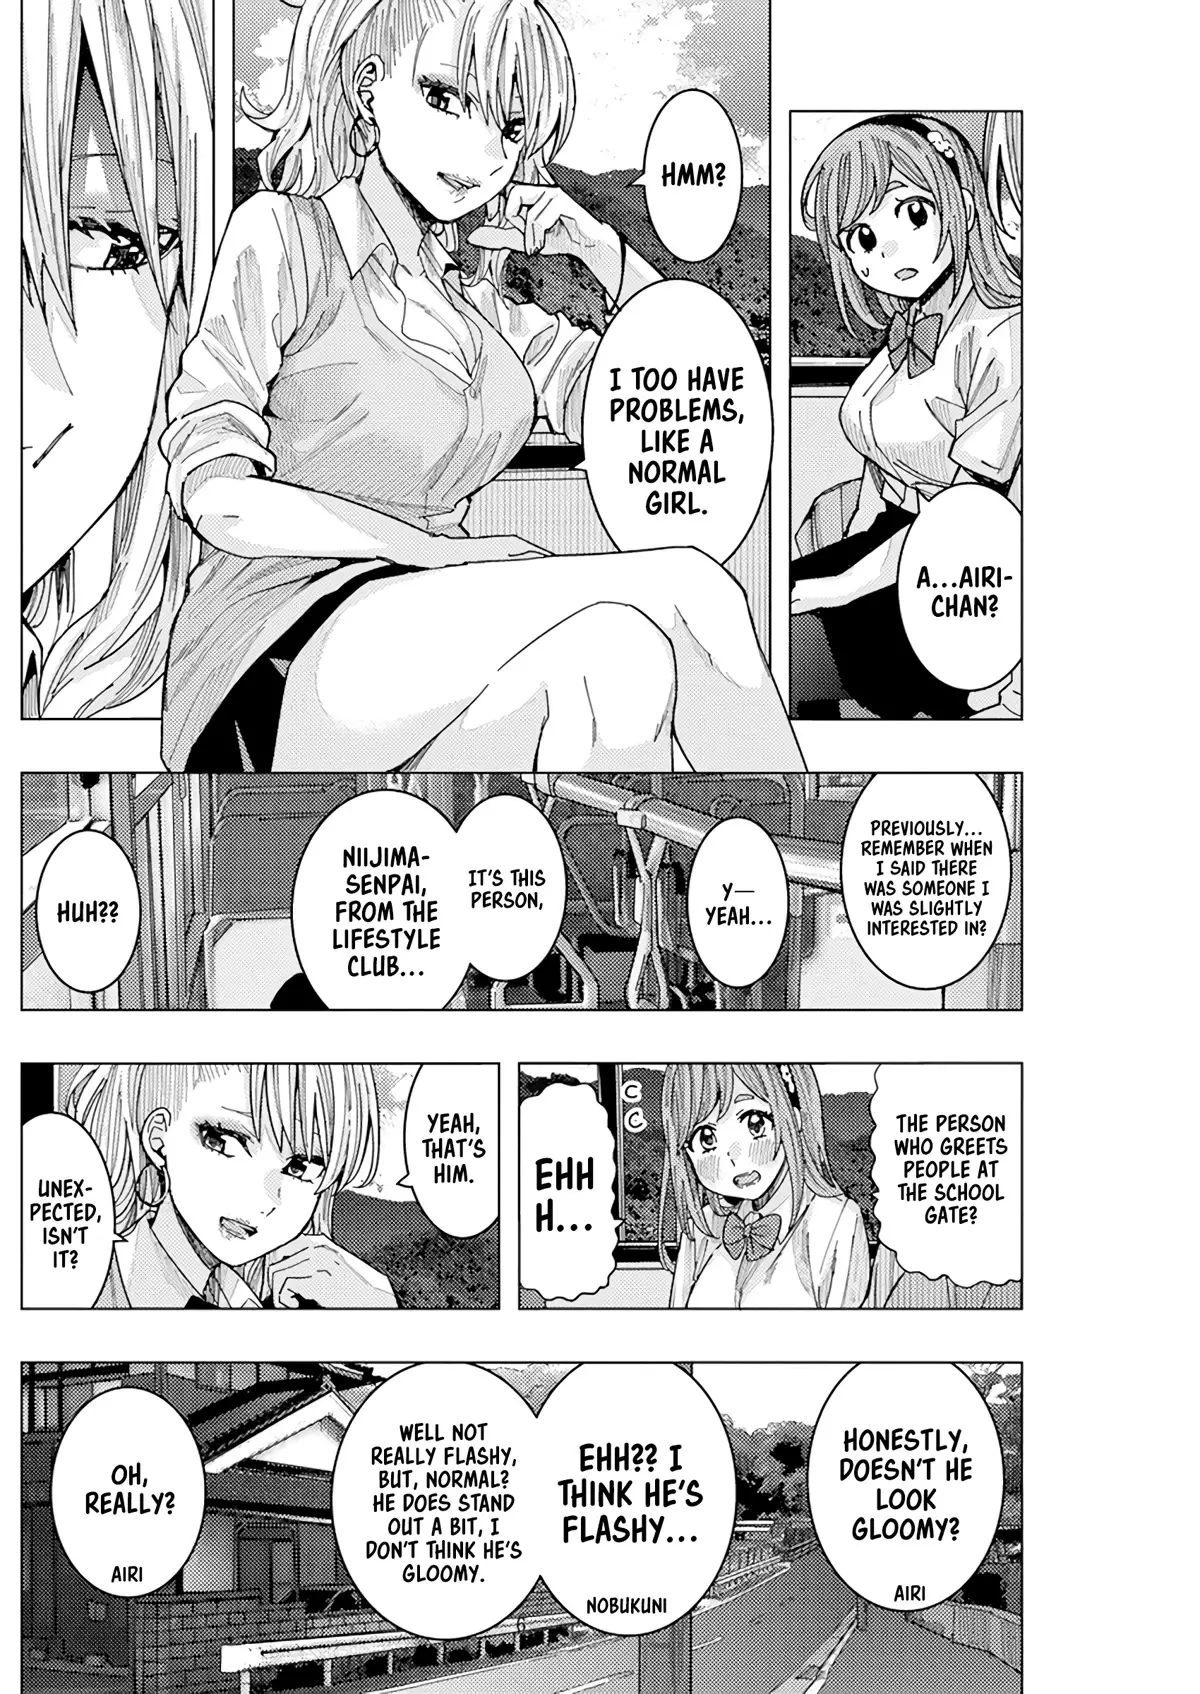 "nobukuni-San" Does She Like Me? - 20 page 7-e7a0f739